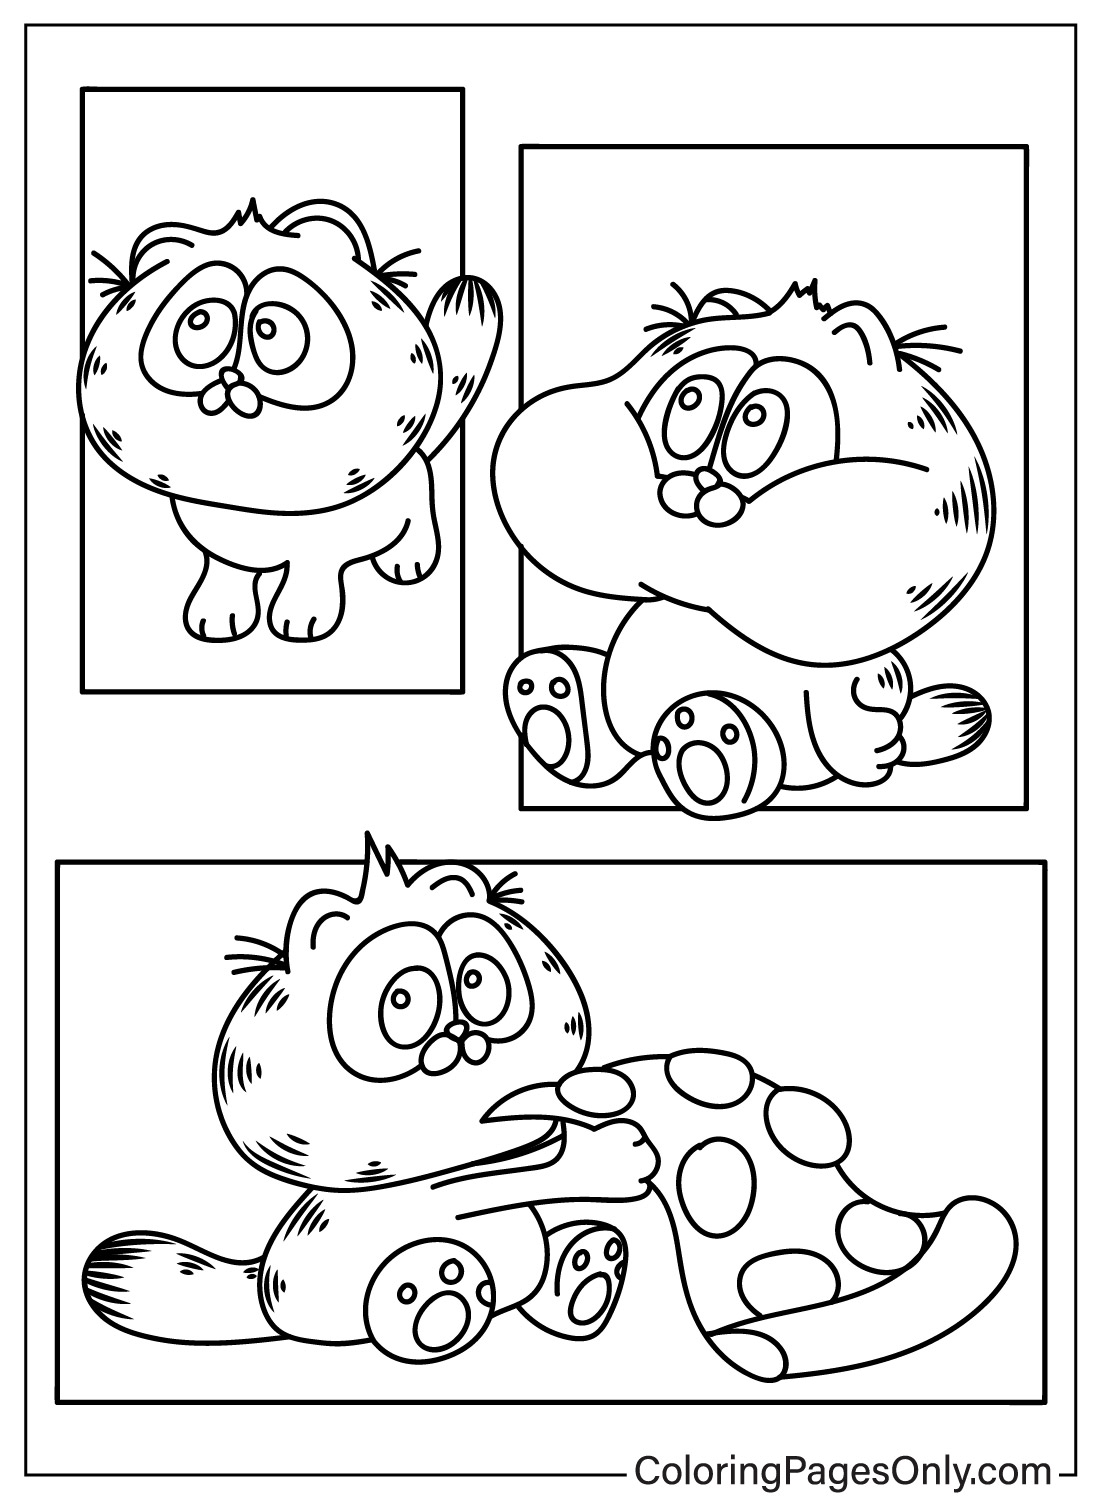 Leuke Garfield kleurplaat van Garfield